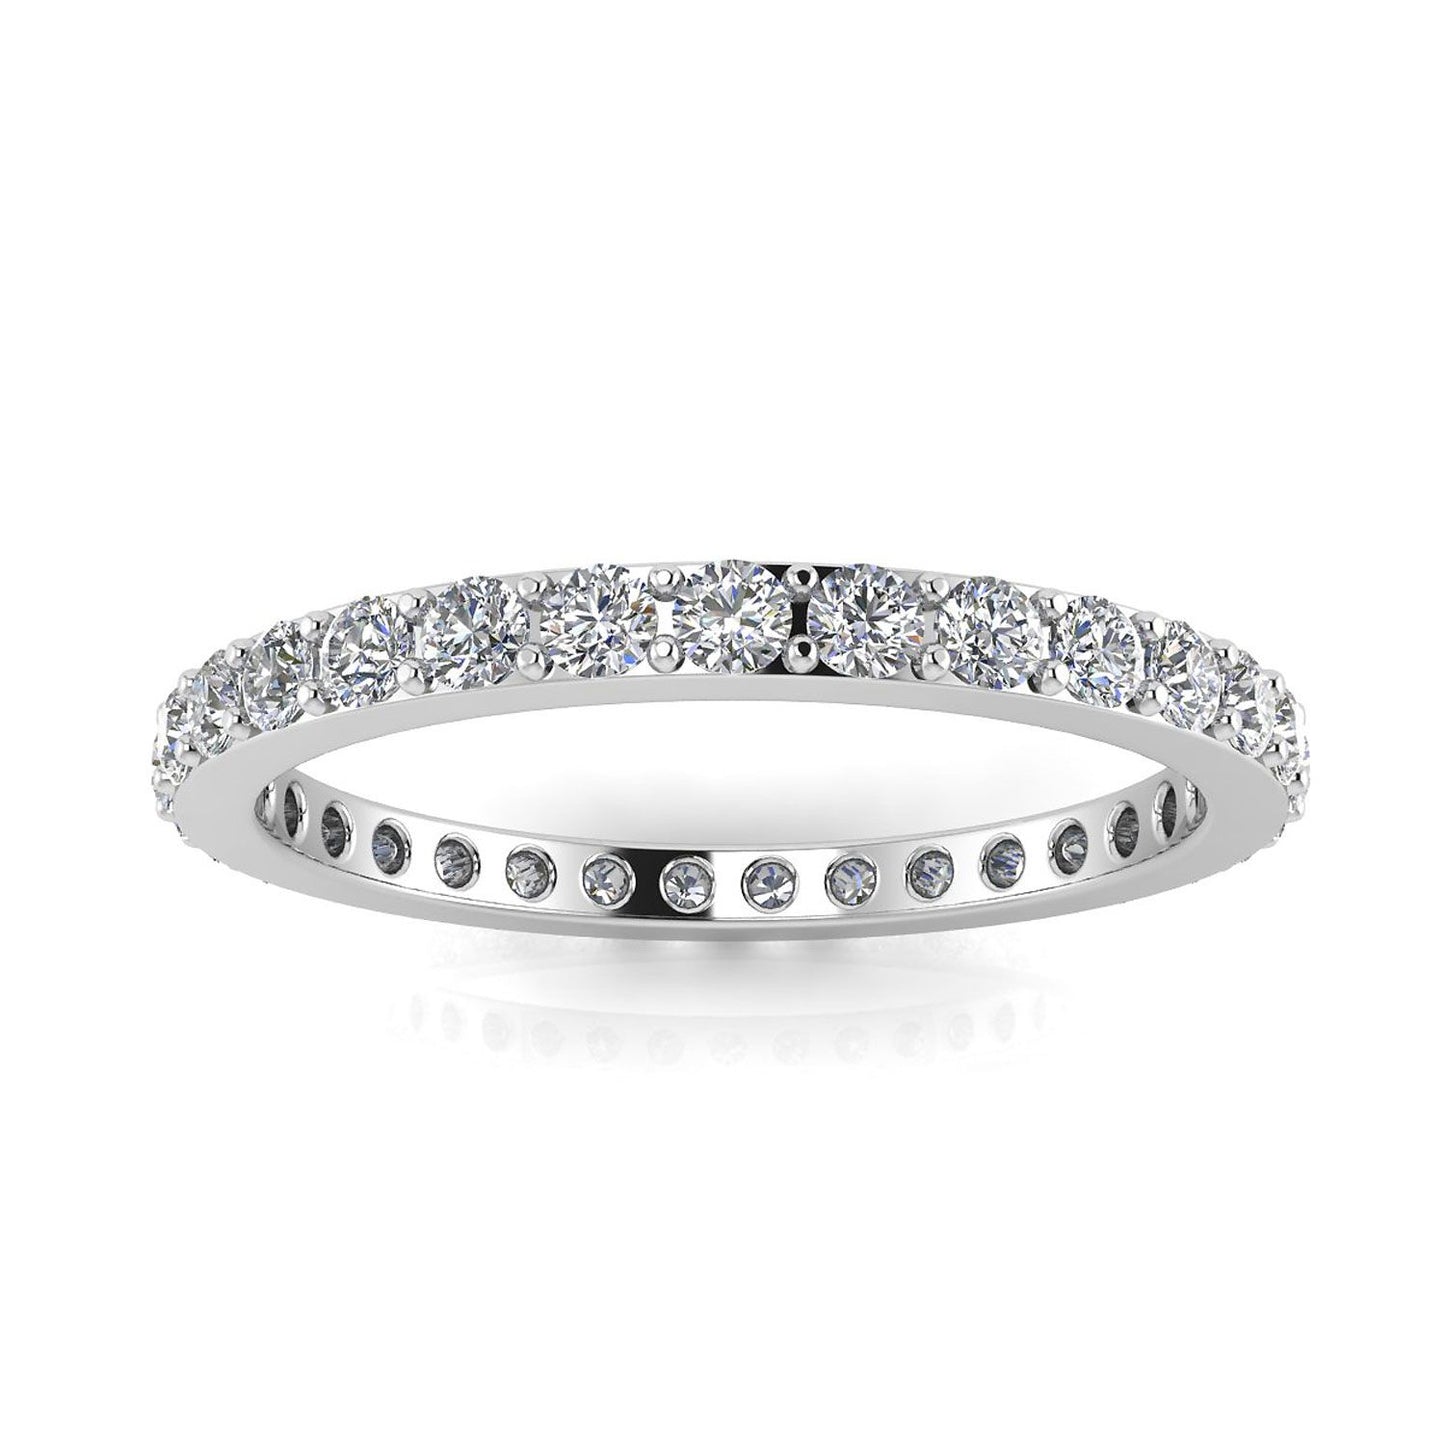 แหวนไพลินเจียระไนเพชรกลมตั้ง Eternity Ring ทองคำขาว 18k (1.37 กะรัต Tw.) ขนาดแหวน 4.5